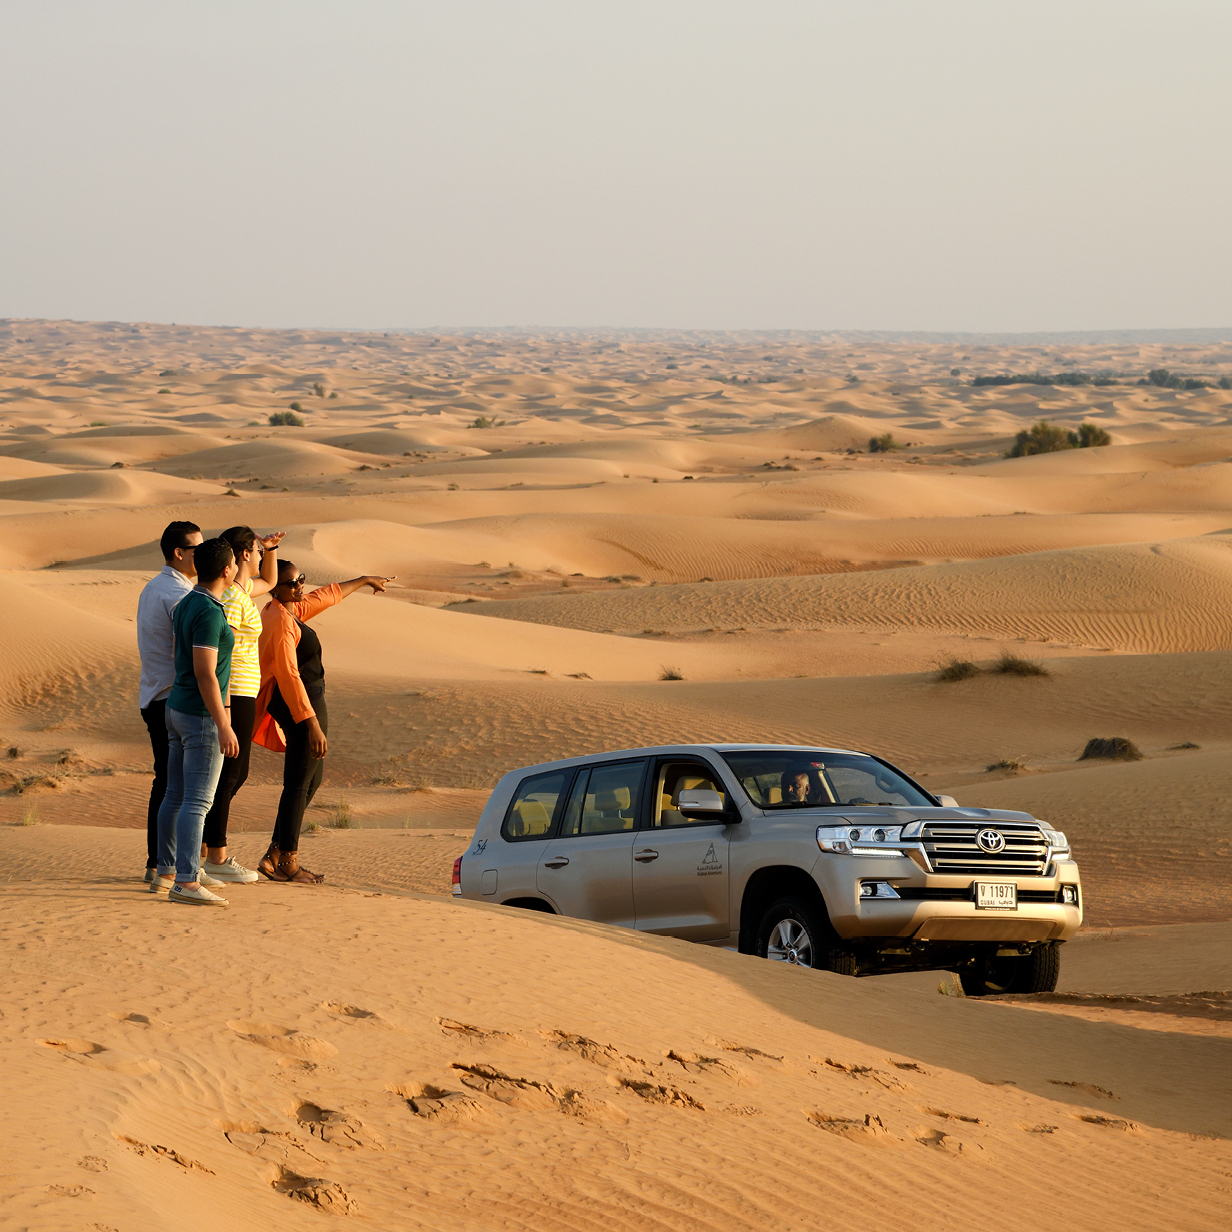 VIP Desert Safari in Dubai - Shared Vehicle, , large